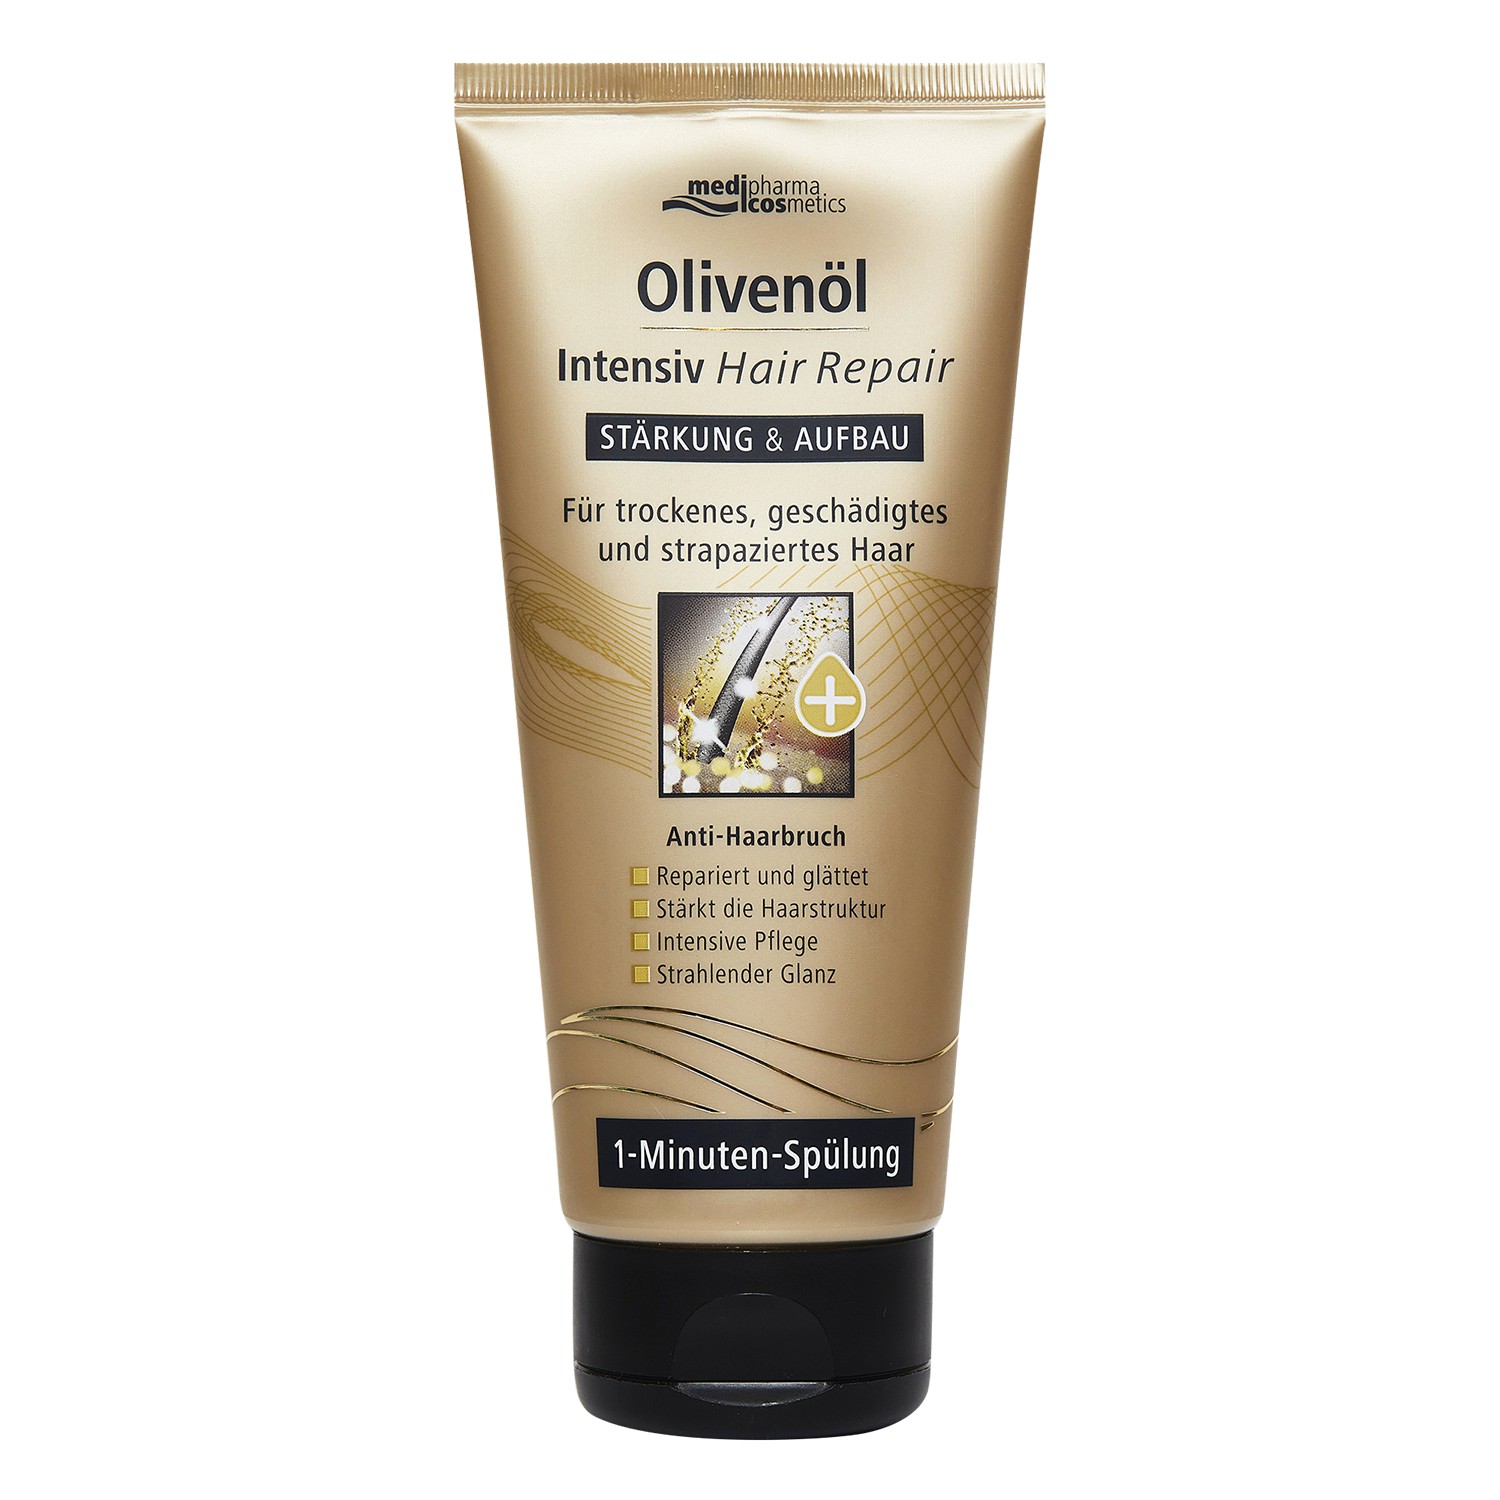 Купить Medipharma Cosmetics Ополаскиватель для восстановления волос Olivenol Intensiv, 200 мл (Medipharma Cosmetics, Olivenol), Германия